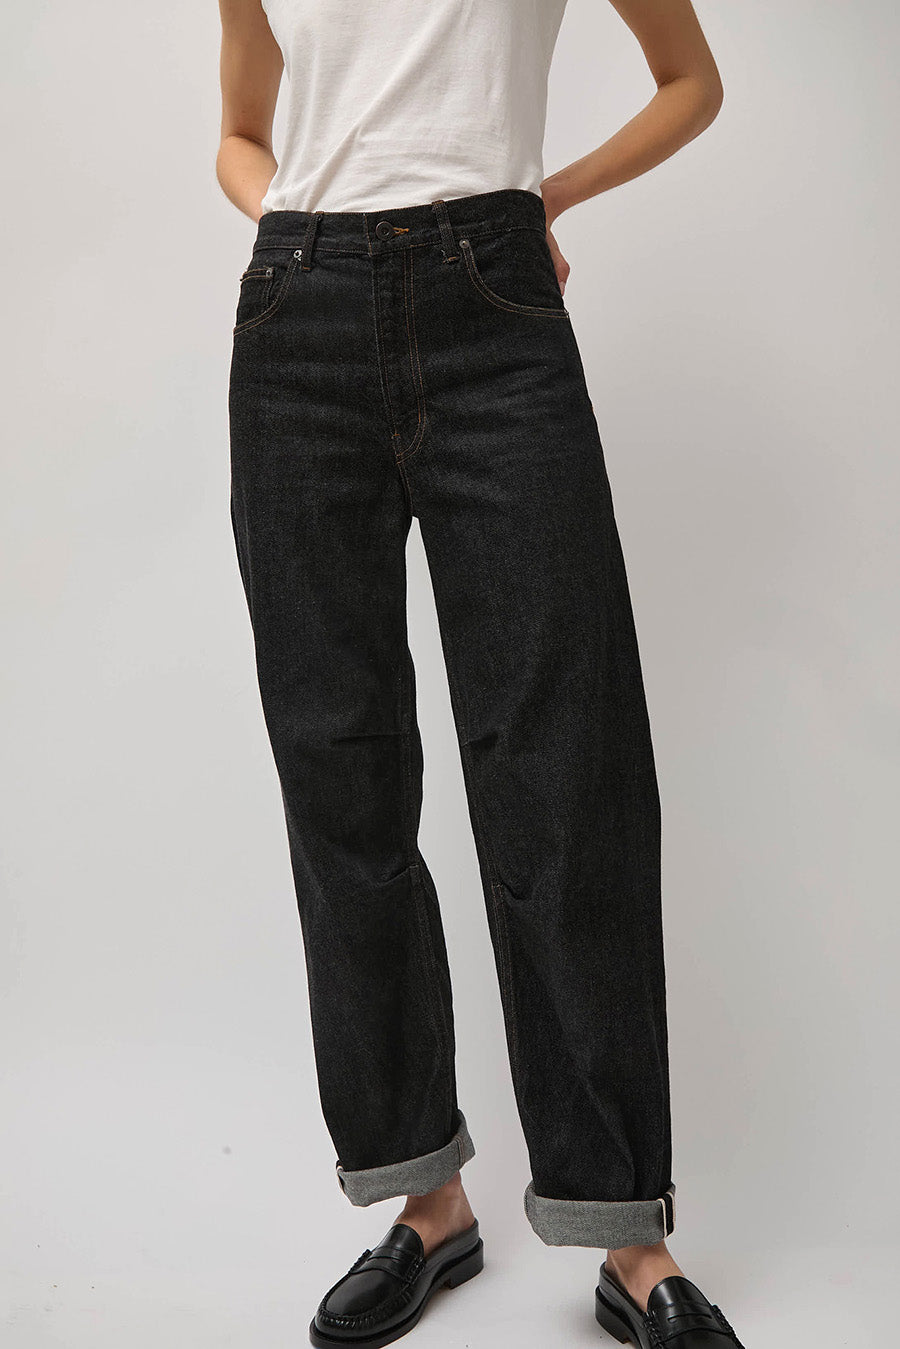 NYMANE Arkive Jean in Black